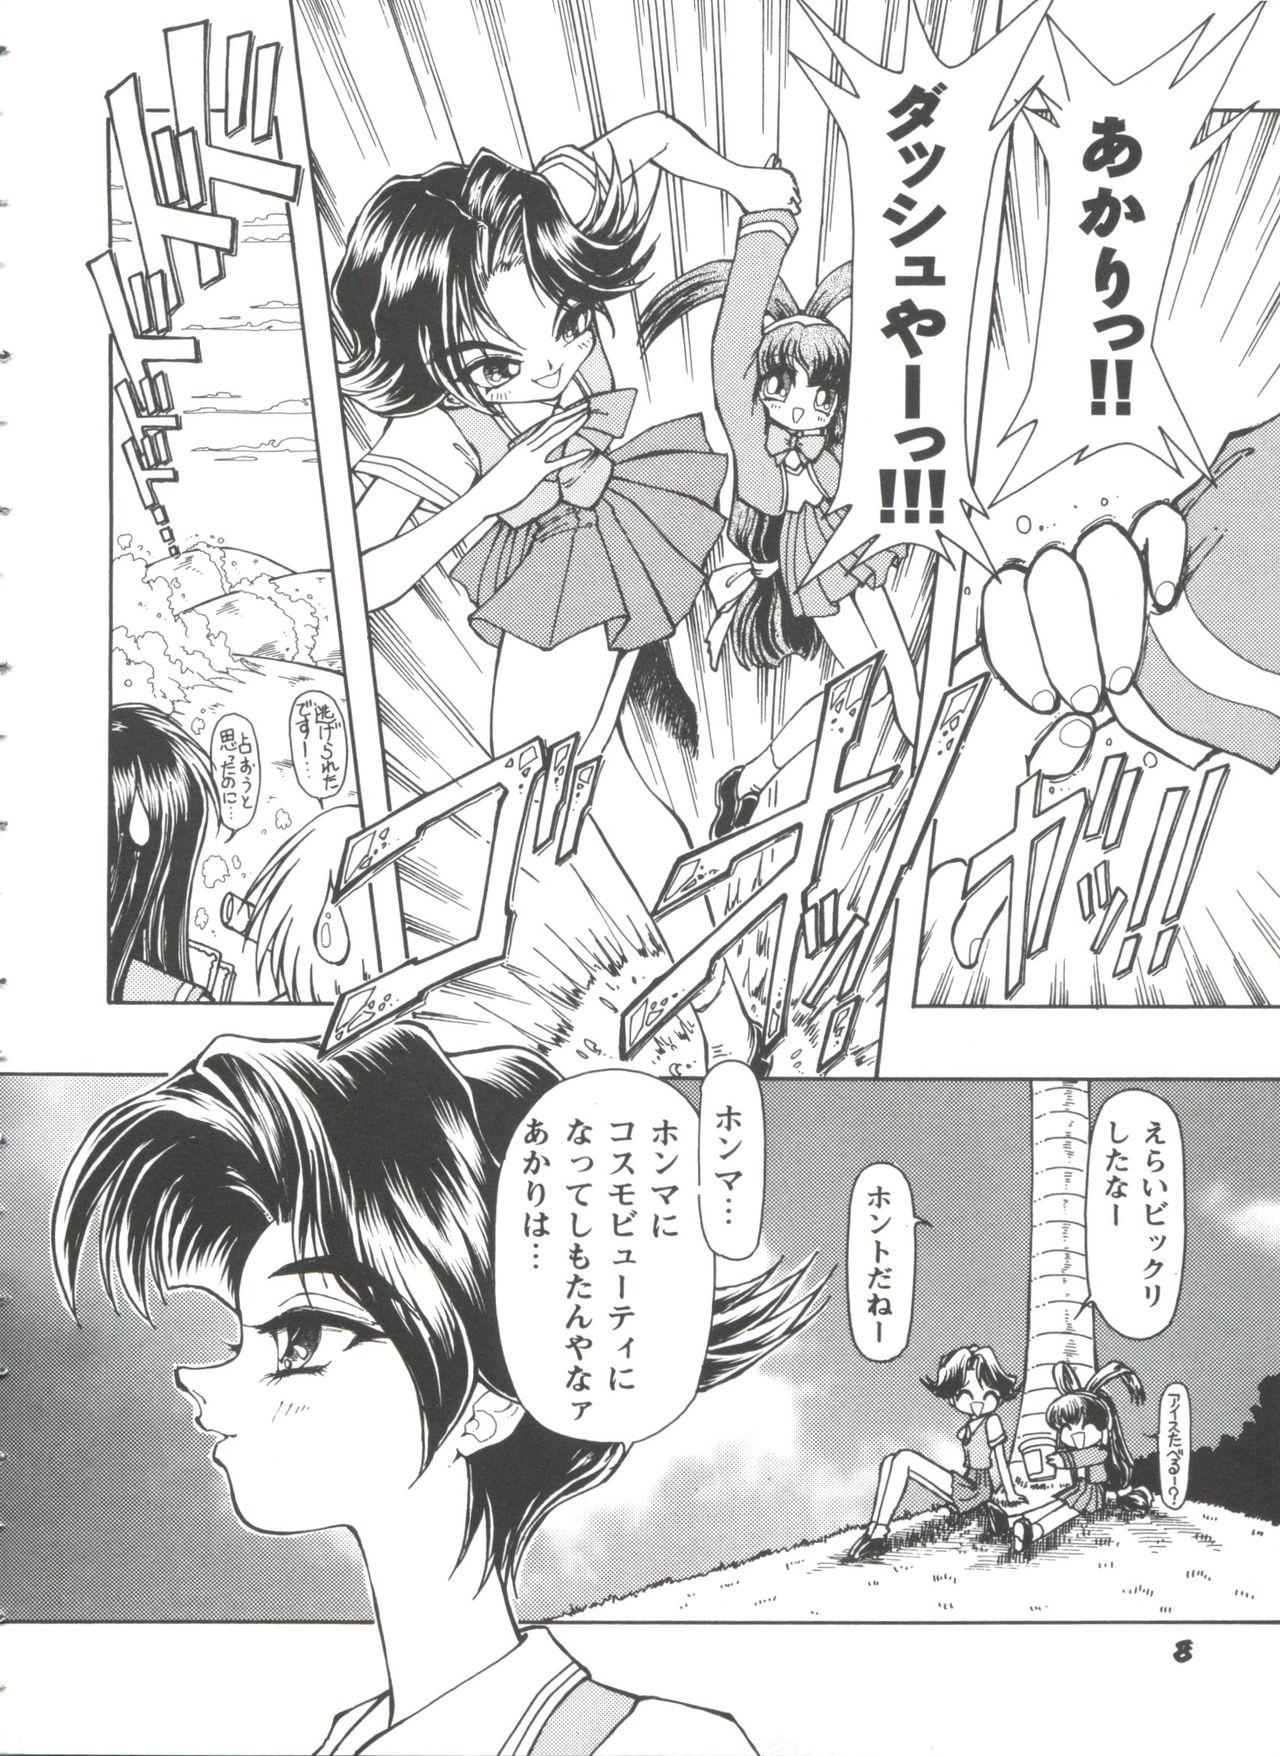 Guyonshemale Girl's Parade 98 Take 10 - Street fighter Darkstalkers Sakura taisen Battle athletes Akihabara dennou gumi Plump - Page 9